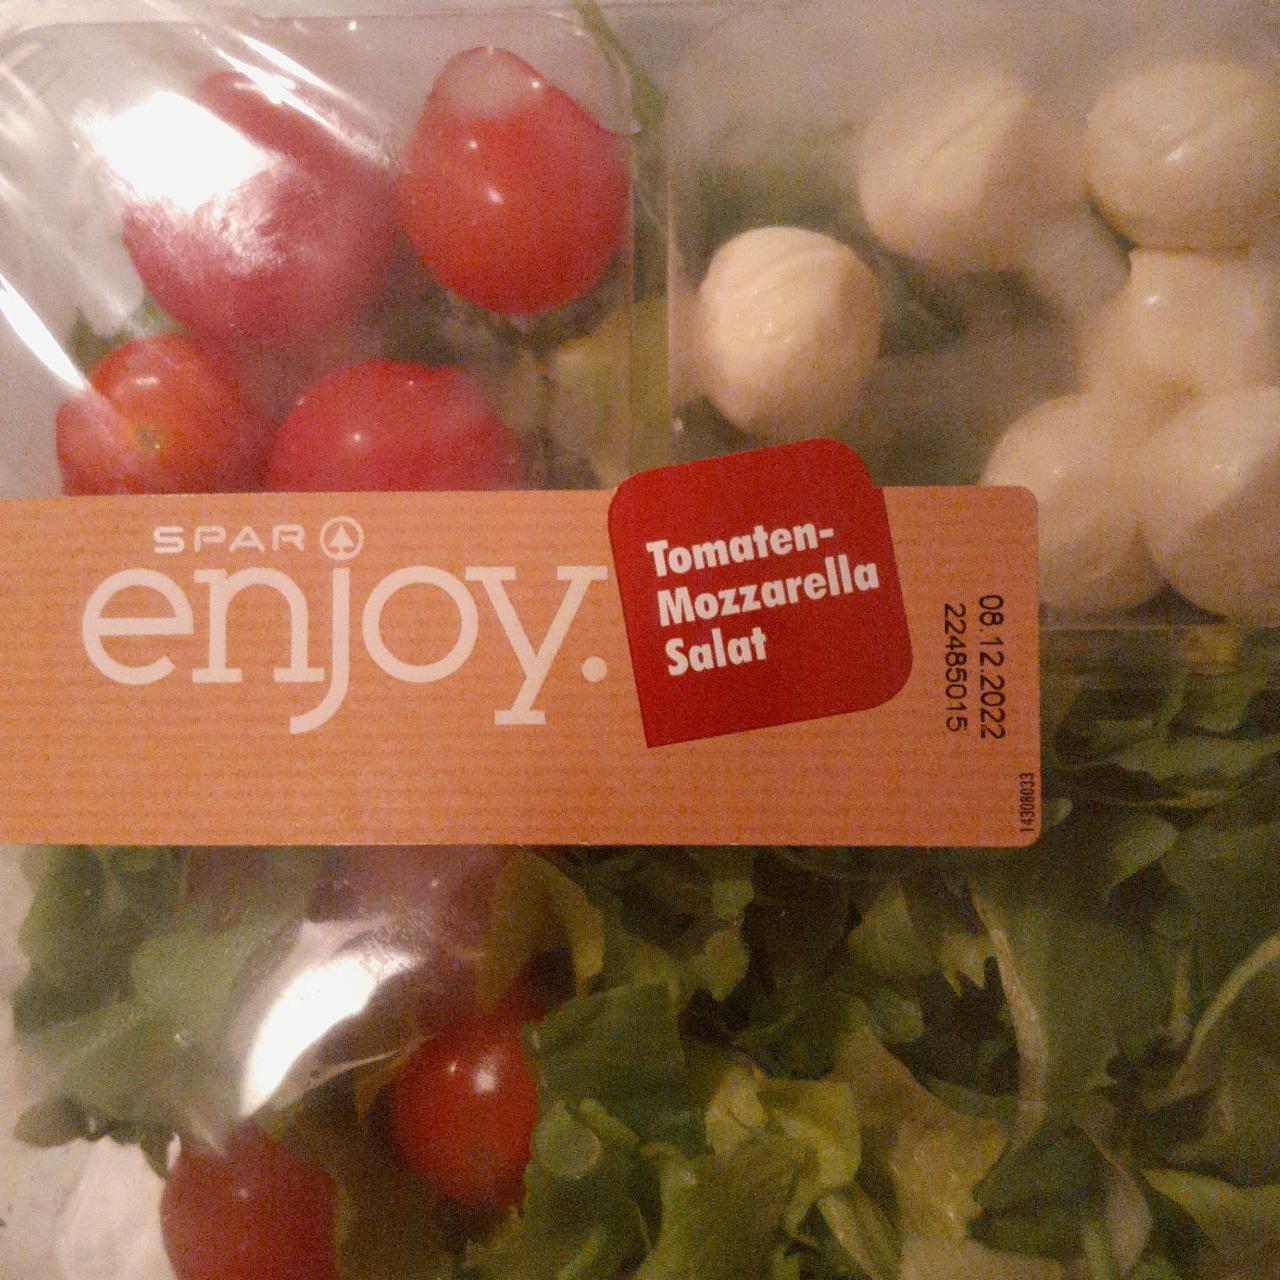 Fotografie - Tomaten-Mozzarella Salat Spar Enjoy